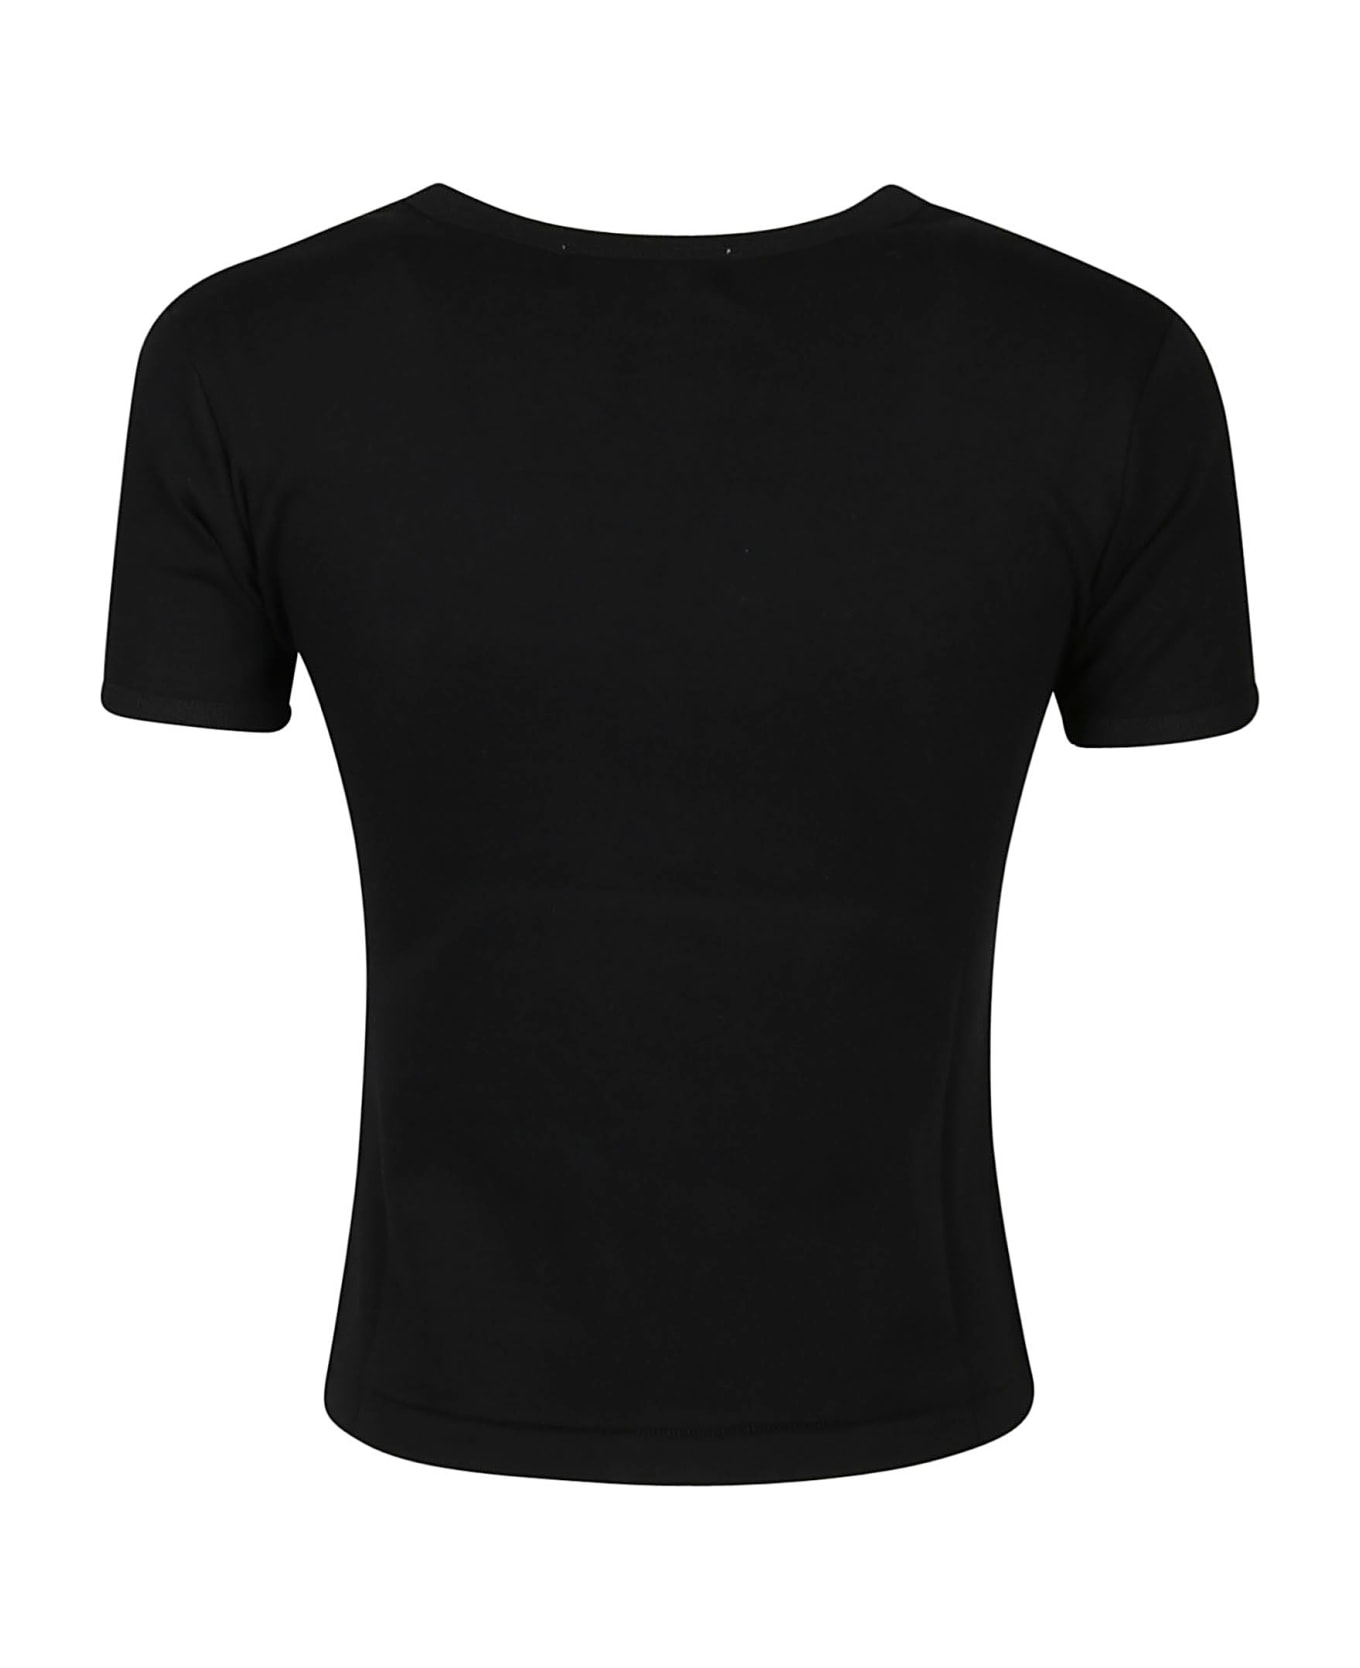 AMBUSH Fitted Graphic T-shirt - Black White